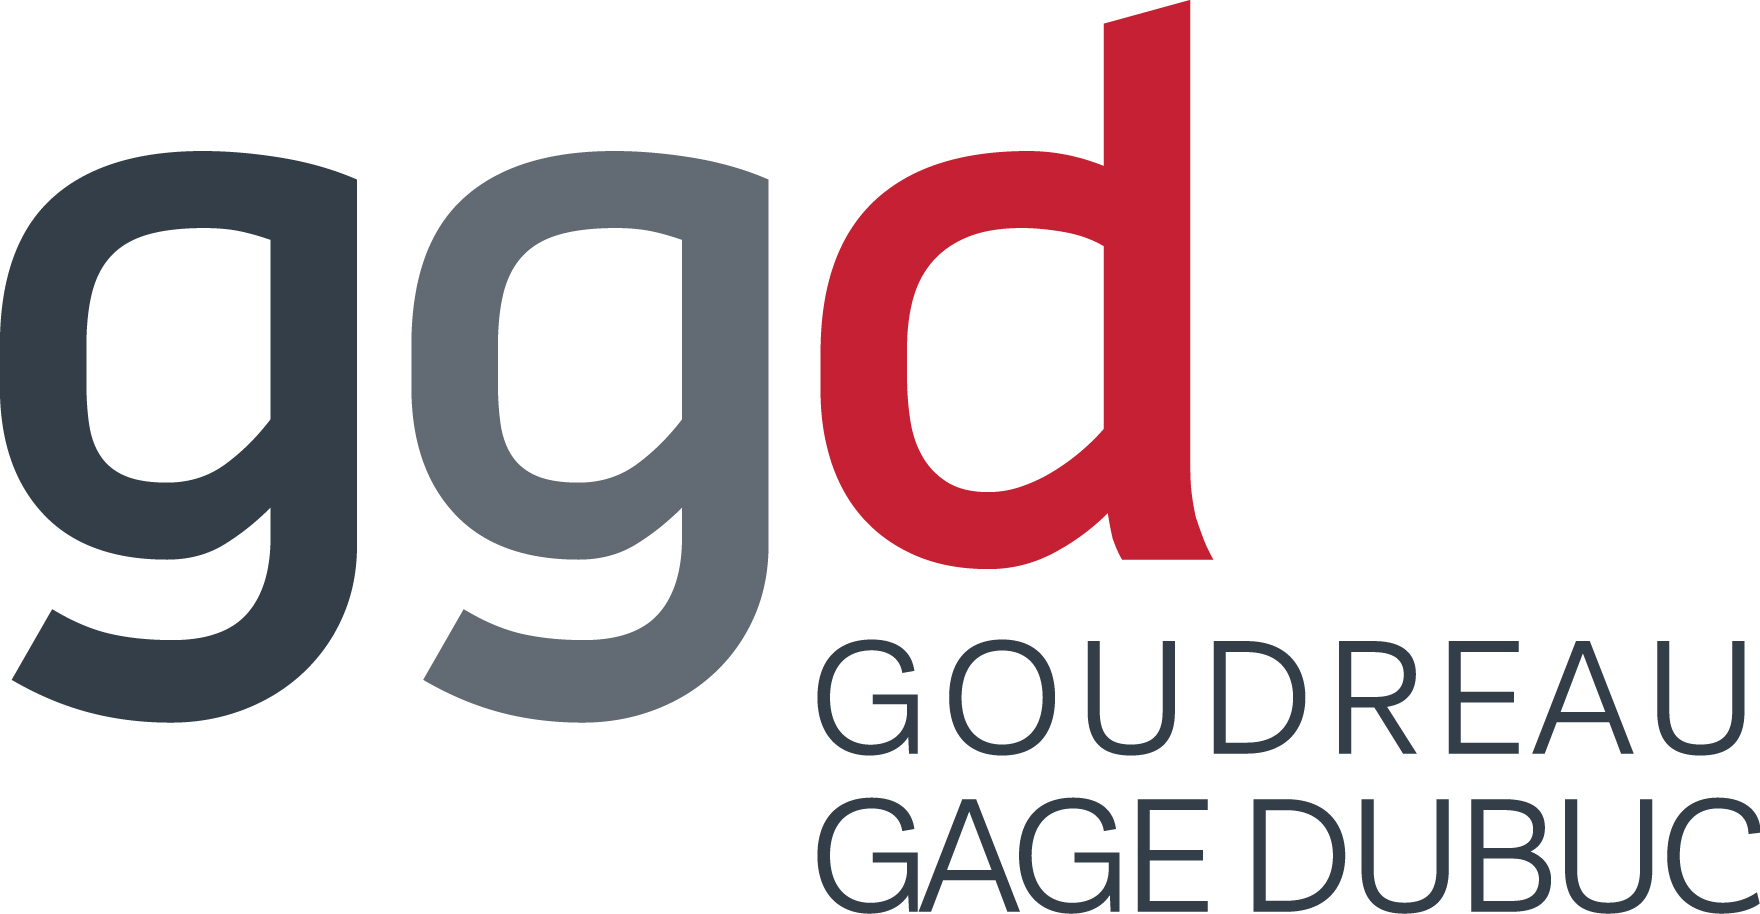         ggd_new_logo.jpg